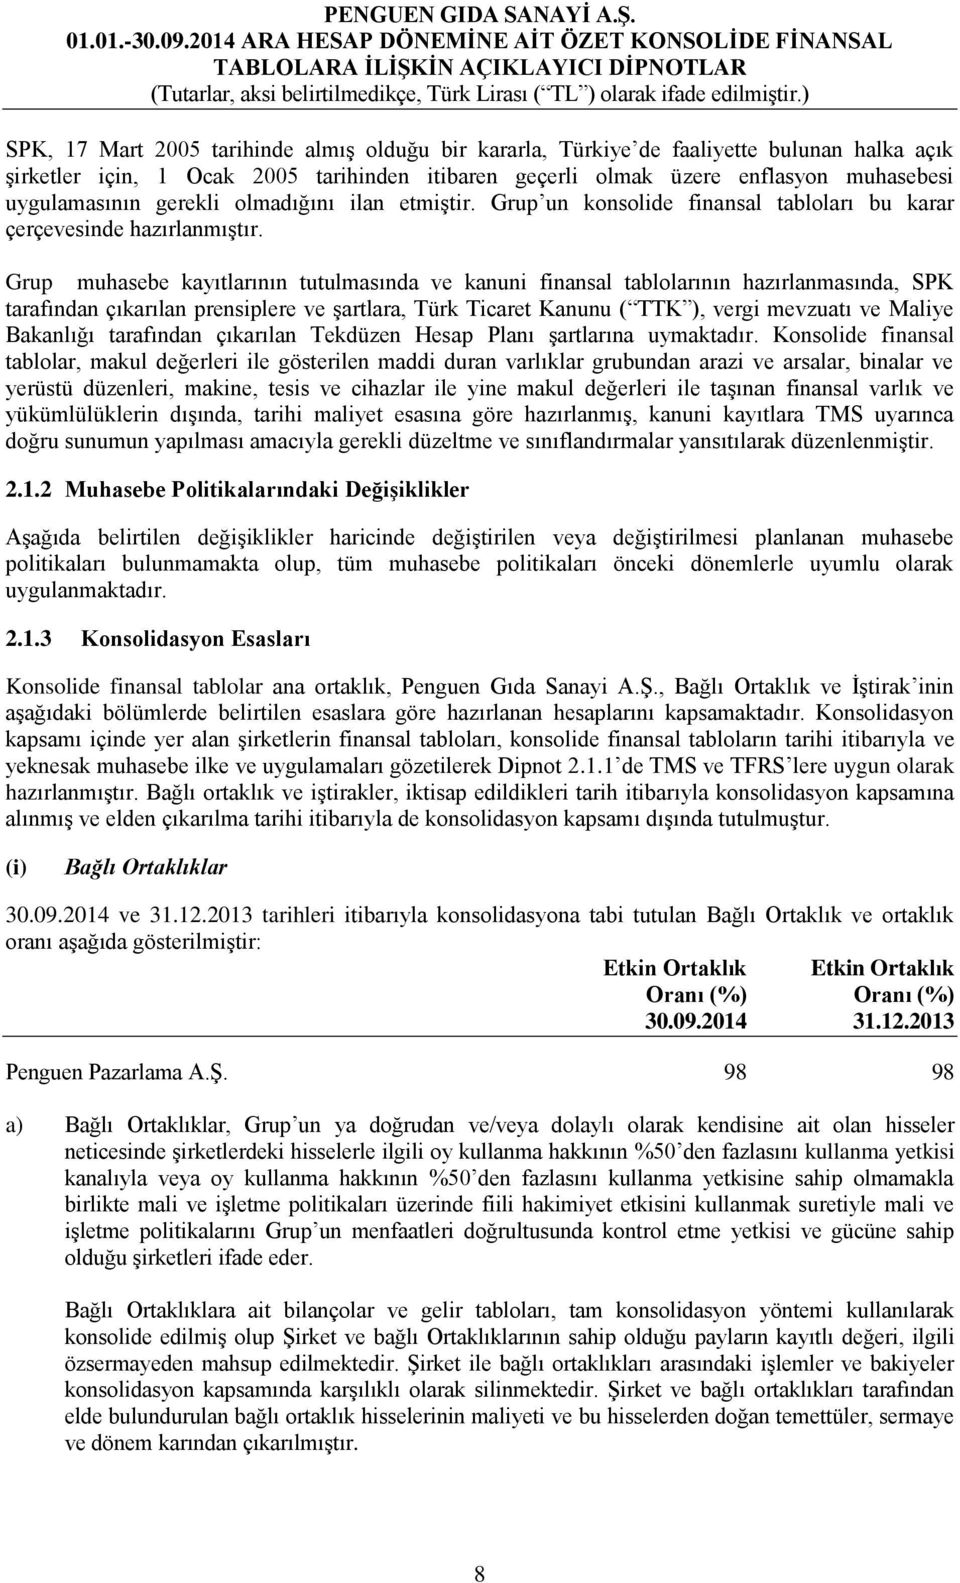 Grup muhasebe kayıtlarının tutulmasında ve kanuni finansal tablolarının hazırlanmasında, SPK tarafından çıkarılan prensiplere ve şartlara, Türk Ticaret Kanunu ( TTK ), vergi mevzuatı ve Maliye